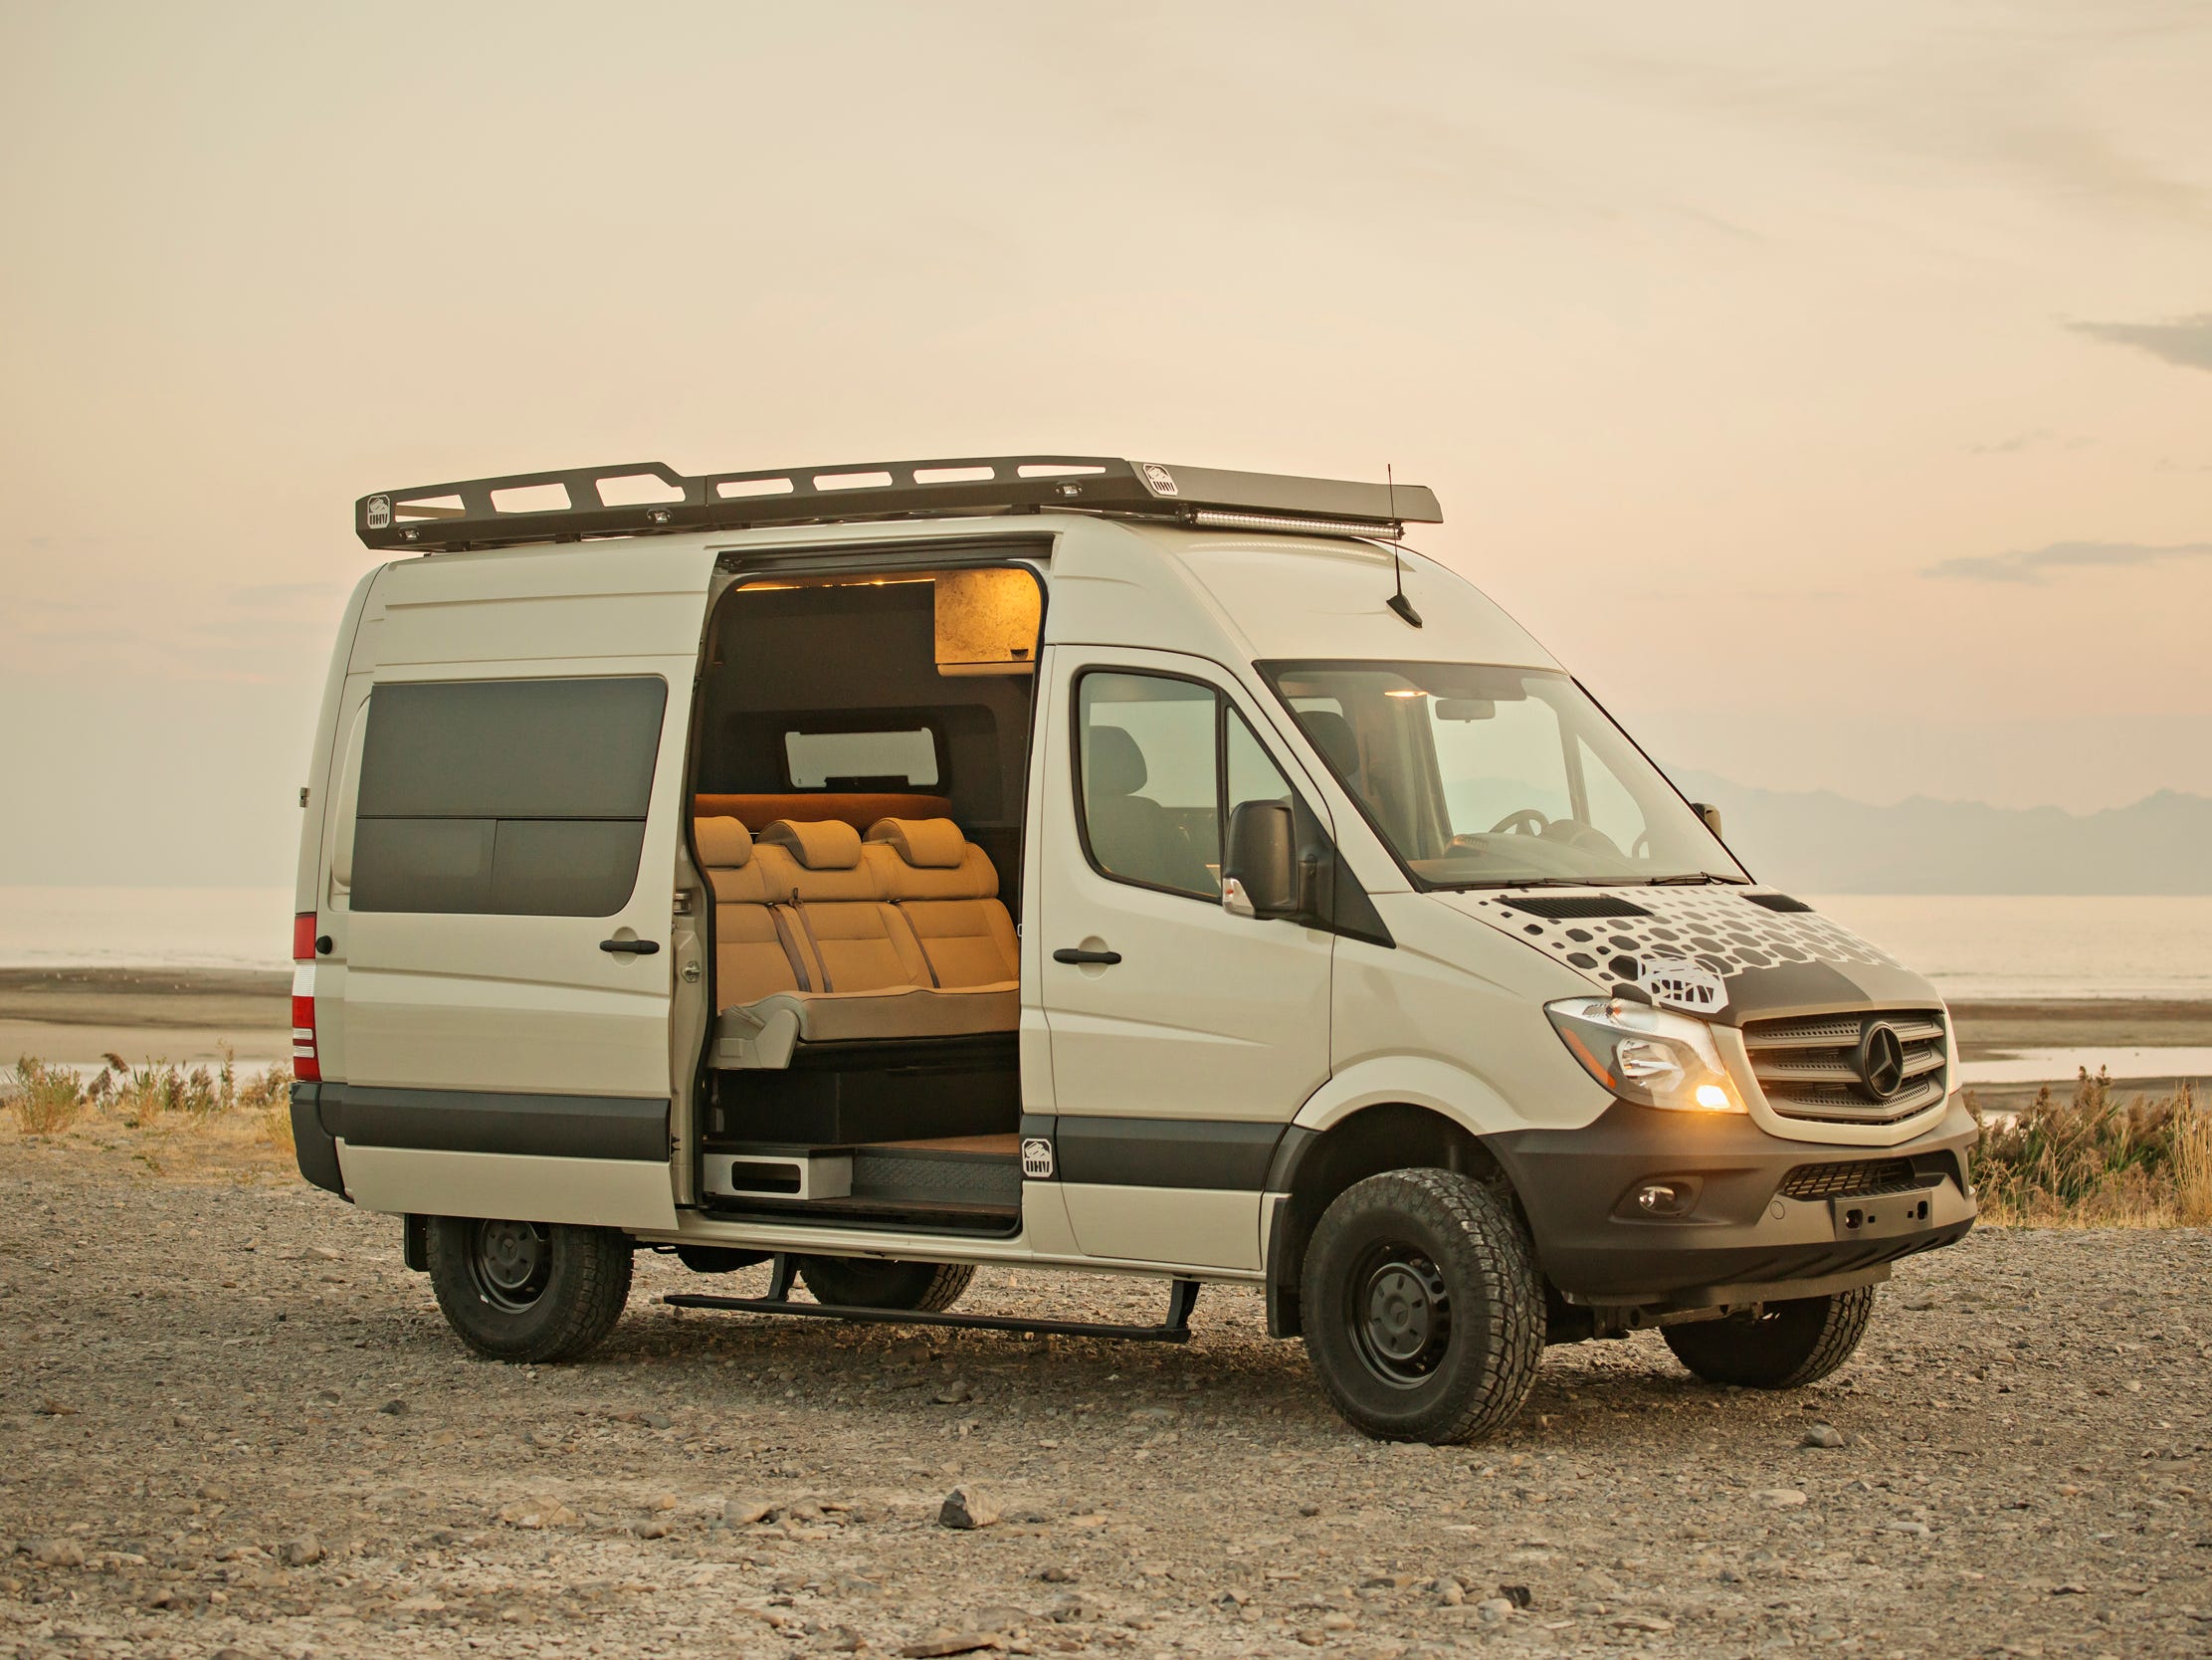 Het Amerikaanse bedrijf Off Highway Van uit Salt Lake City specialiseert zich in het ombouwen van bestelbusjes tot campers. Deze zomer bleek de Doc Holiday, zeer gewild: een Mercedes-Benz Sprinter die is omgebouwd tot een camper voor families. 